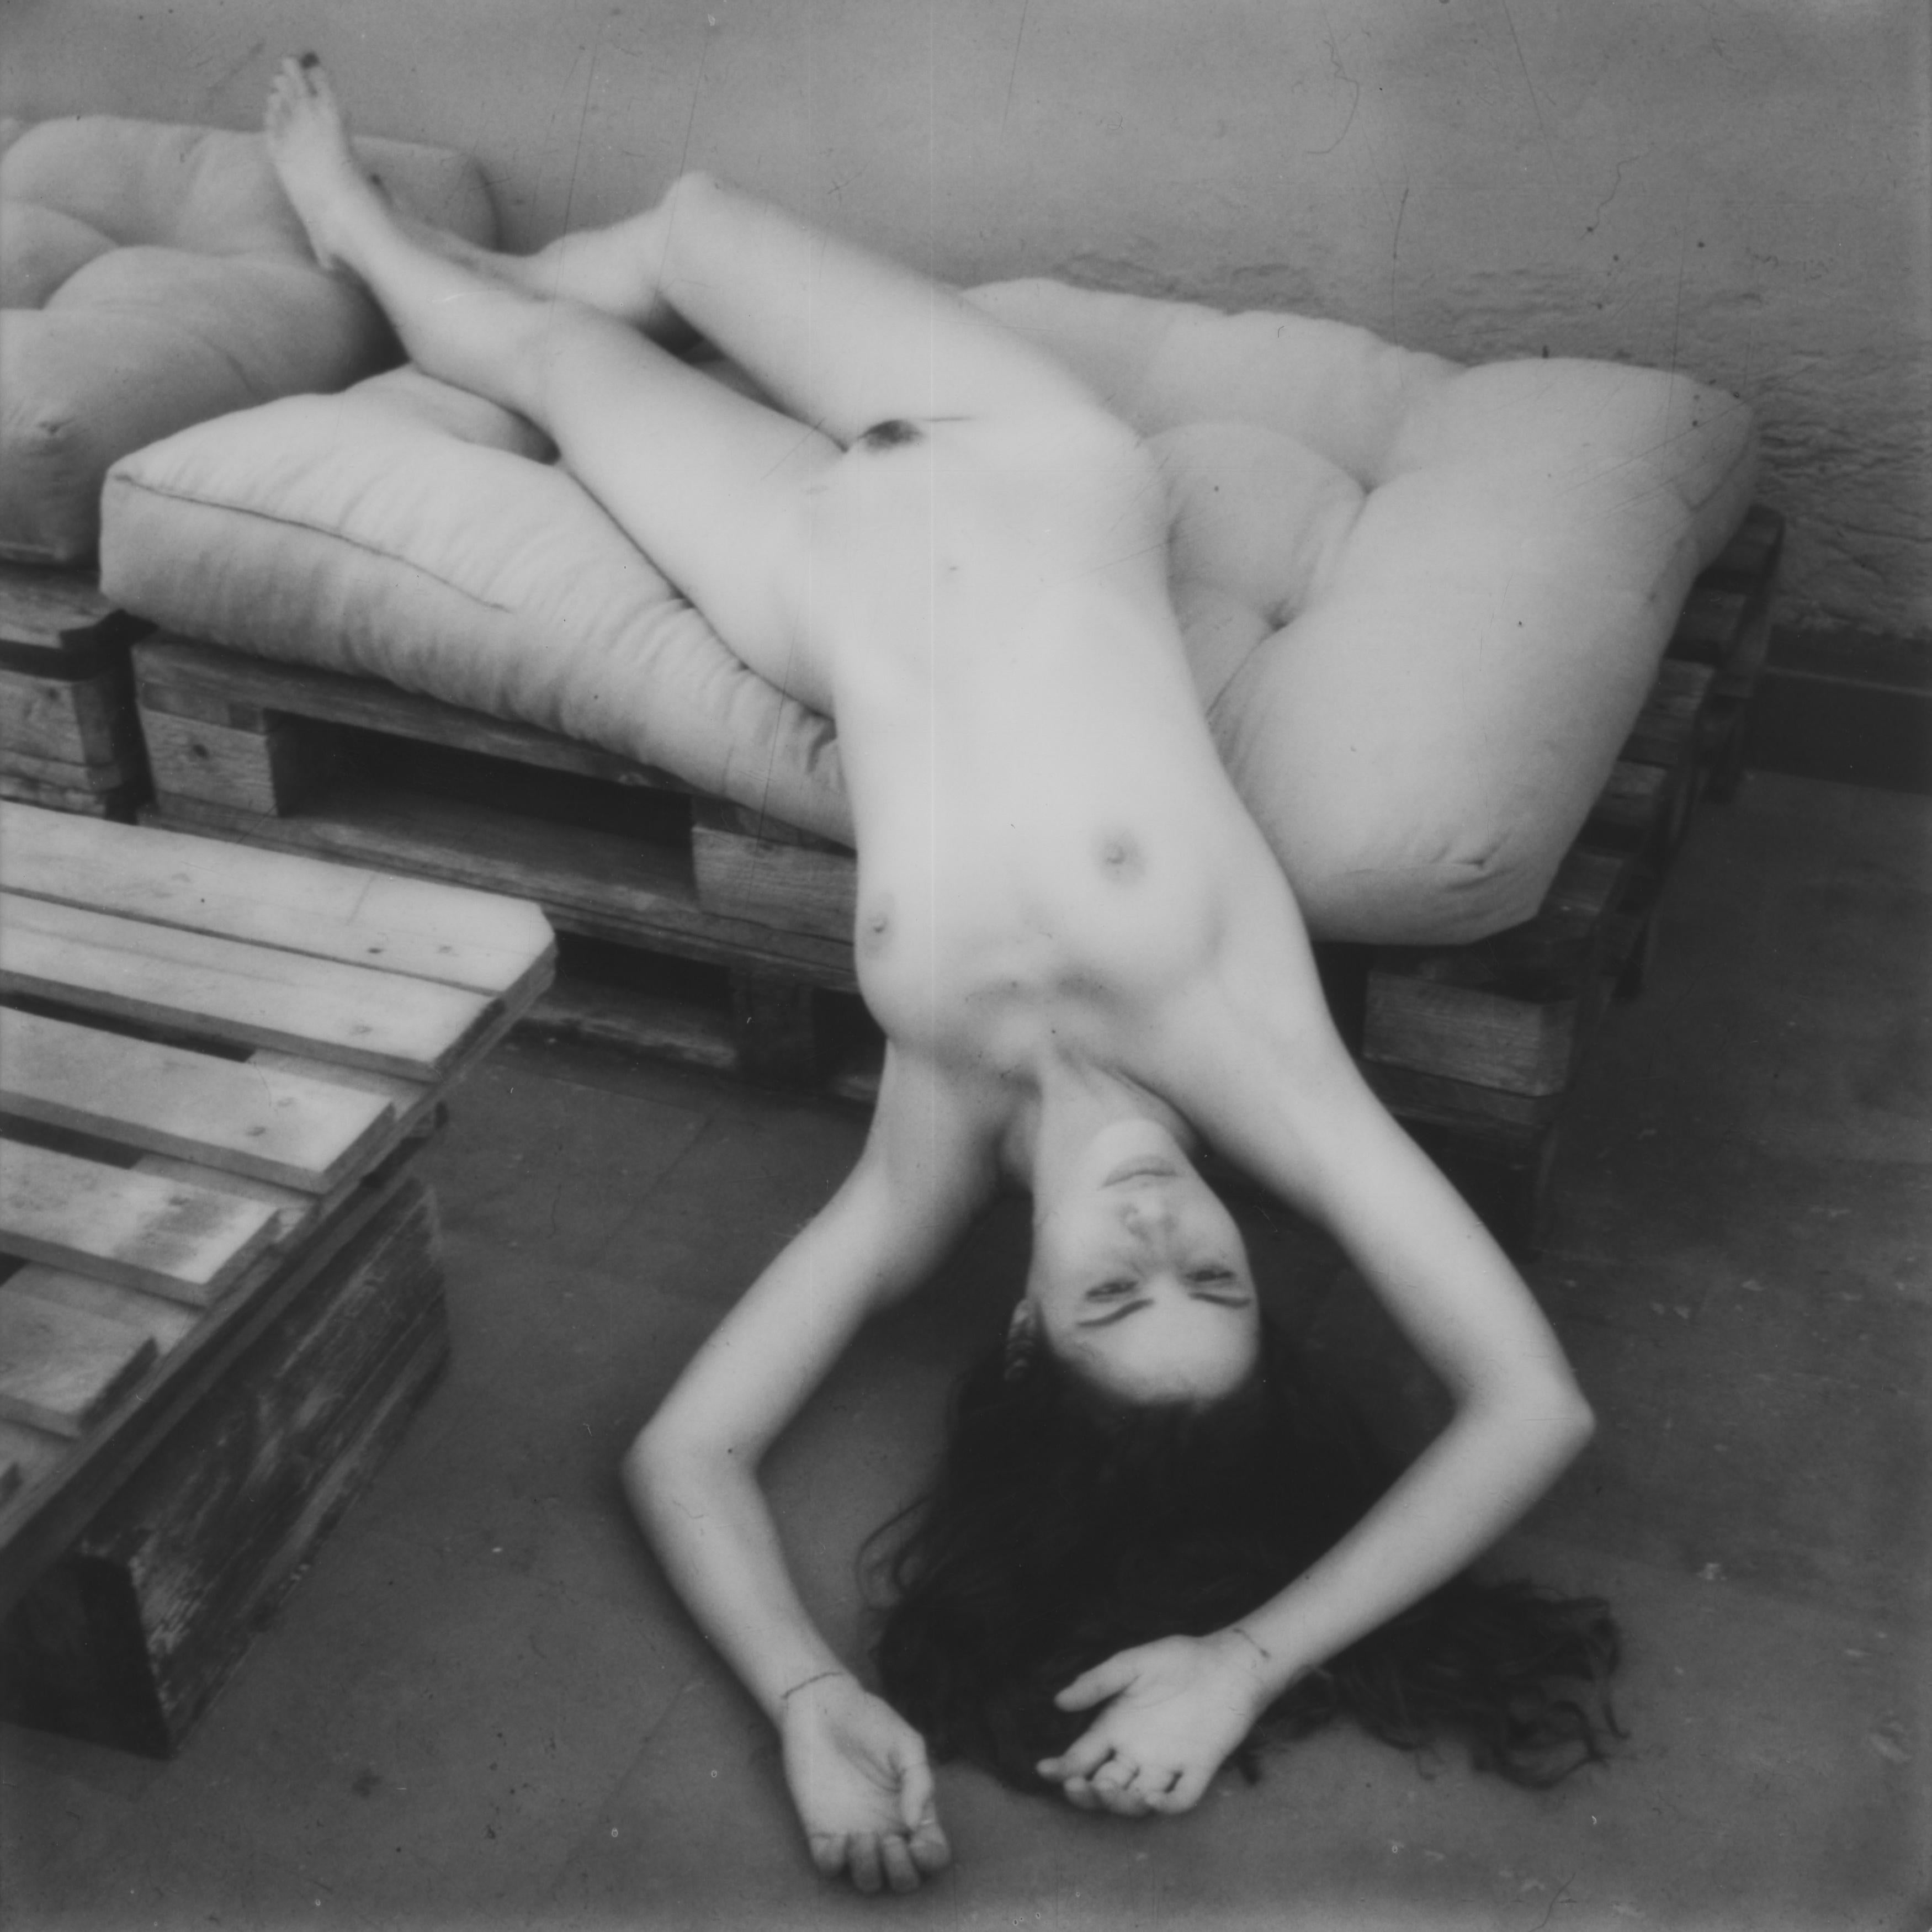 Kirsten Thys van den Audenaerde Nude Photograph - Fallen - Contemporary, Women, Polaroid, 21st Century, Nude, 21st Century